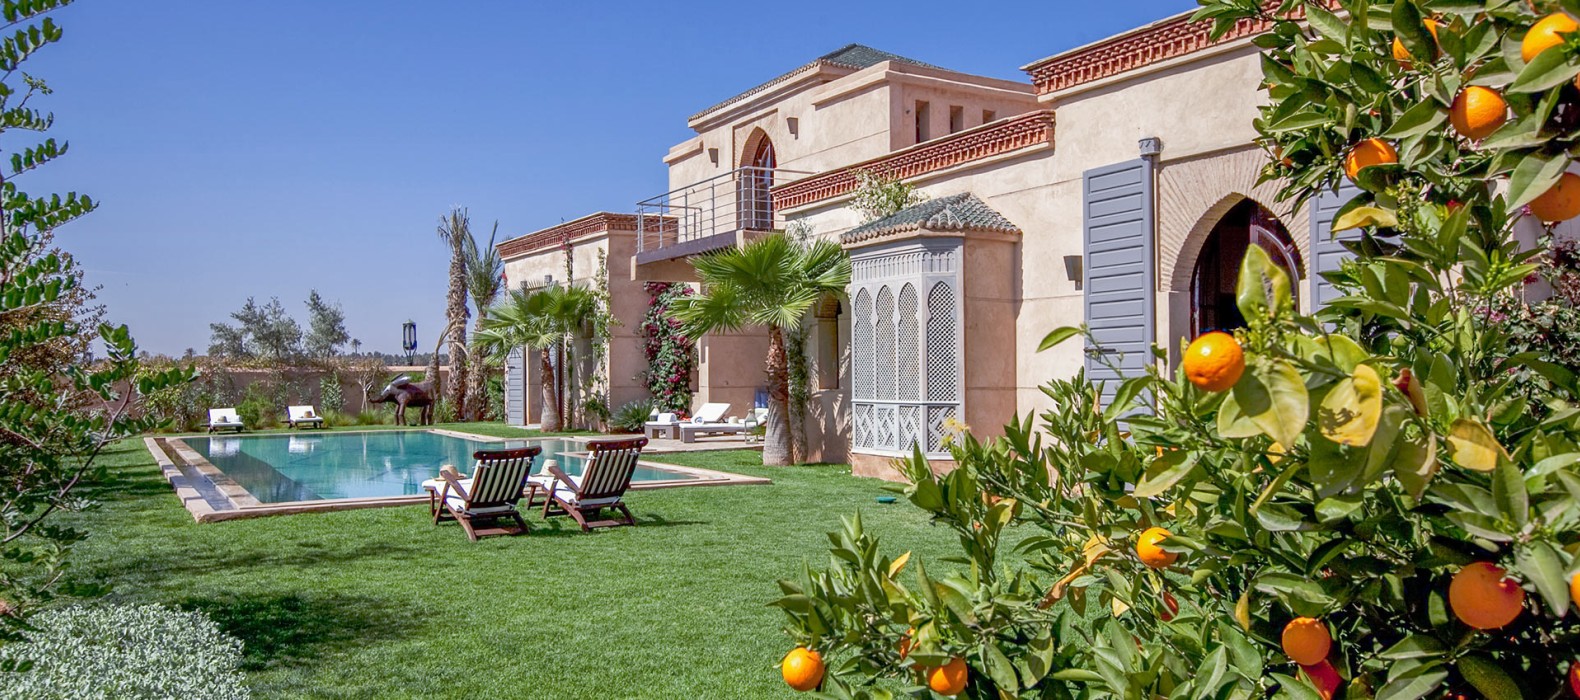 Exterior villa view of Villa Youne in Marrakech